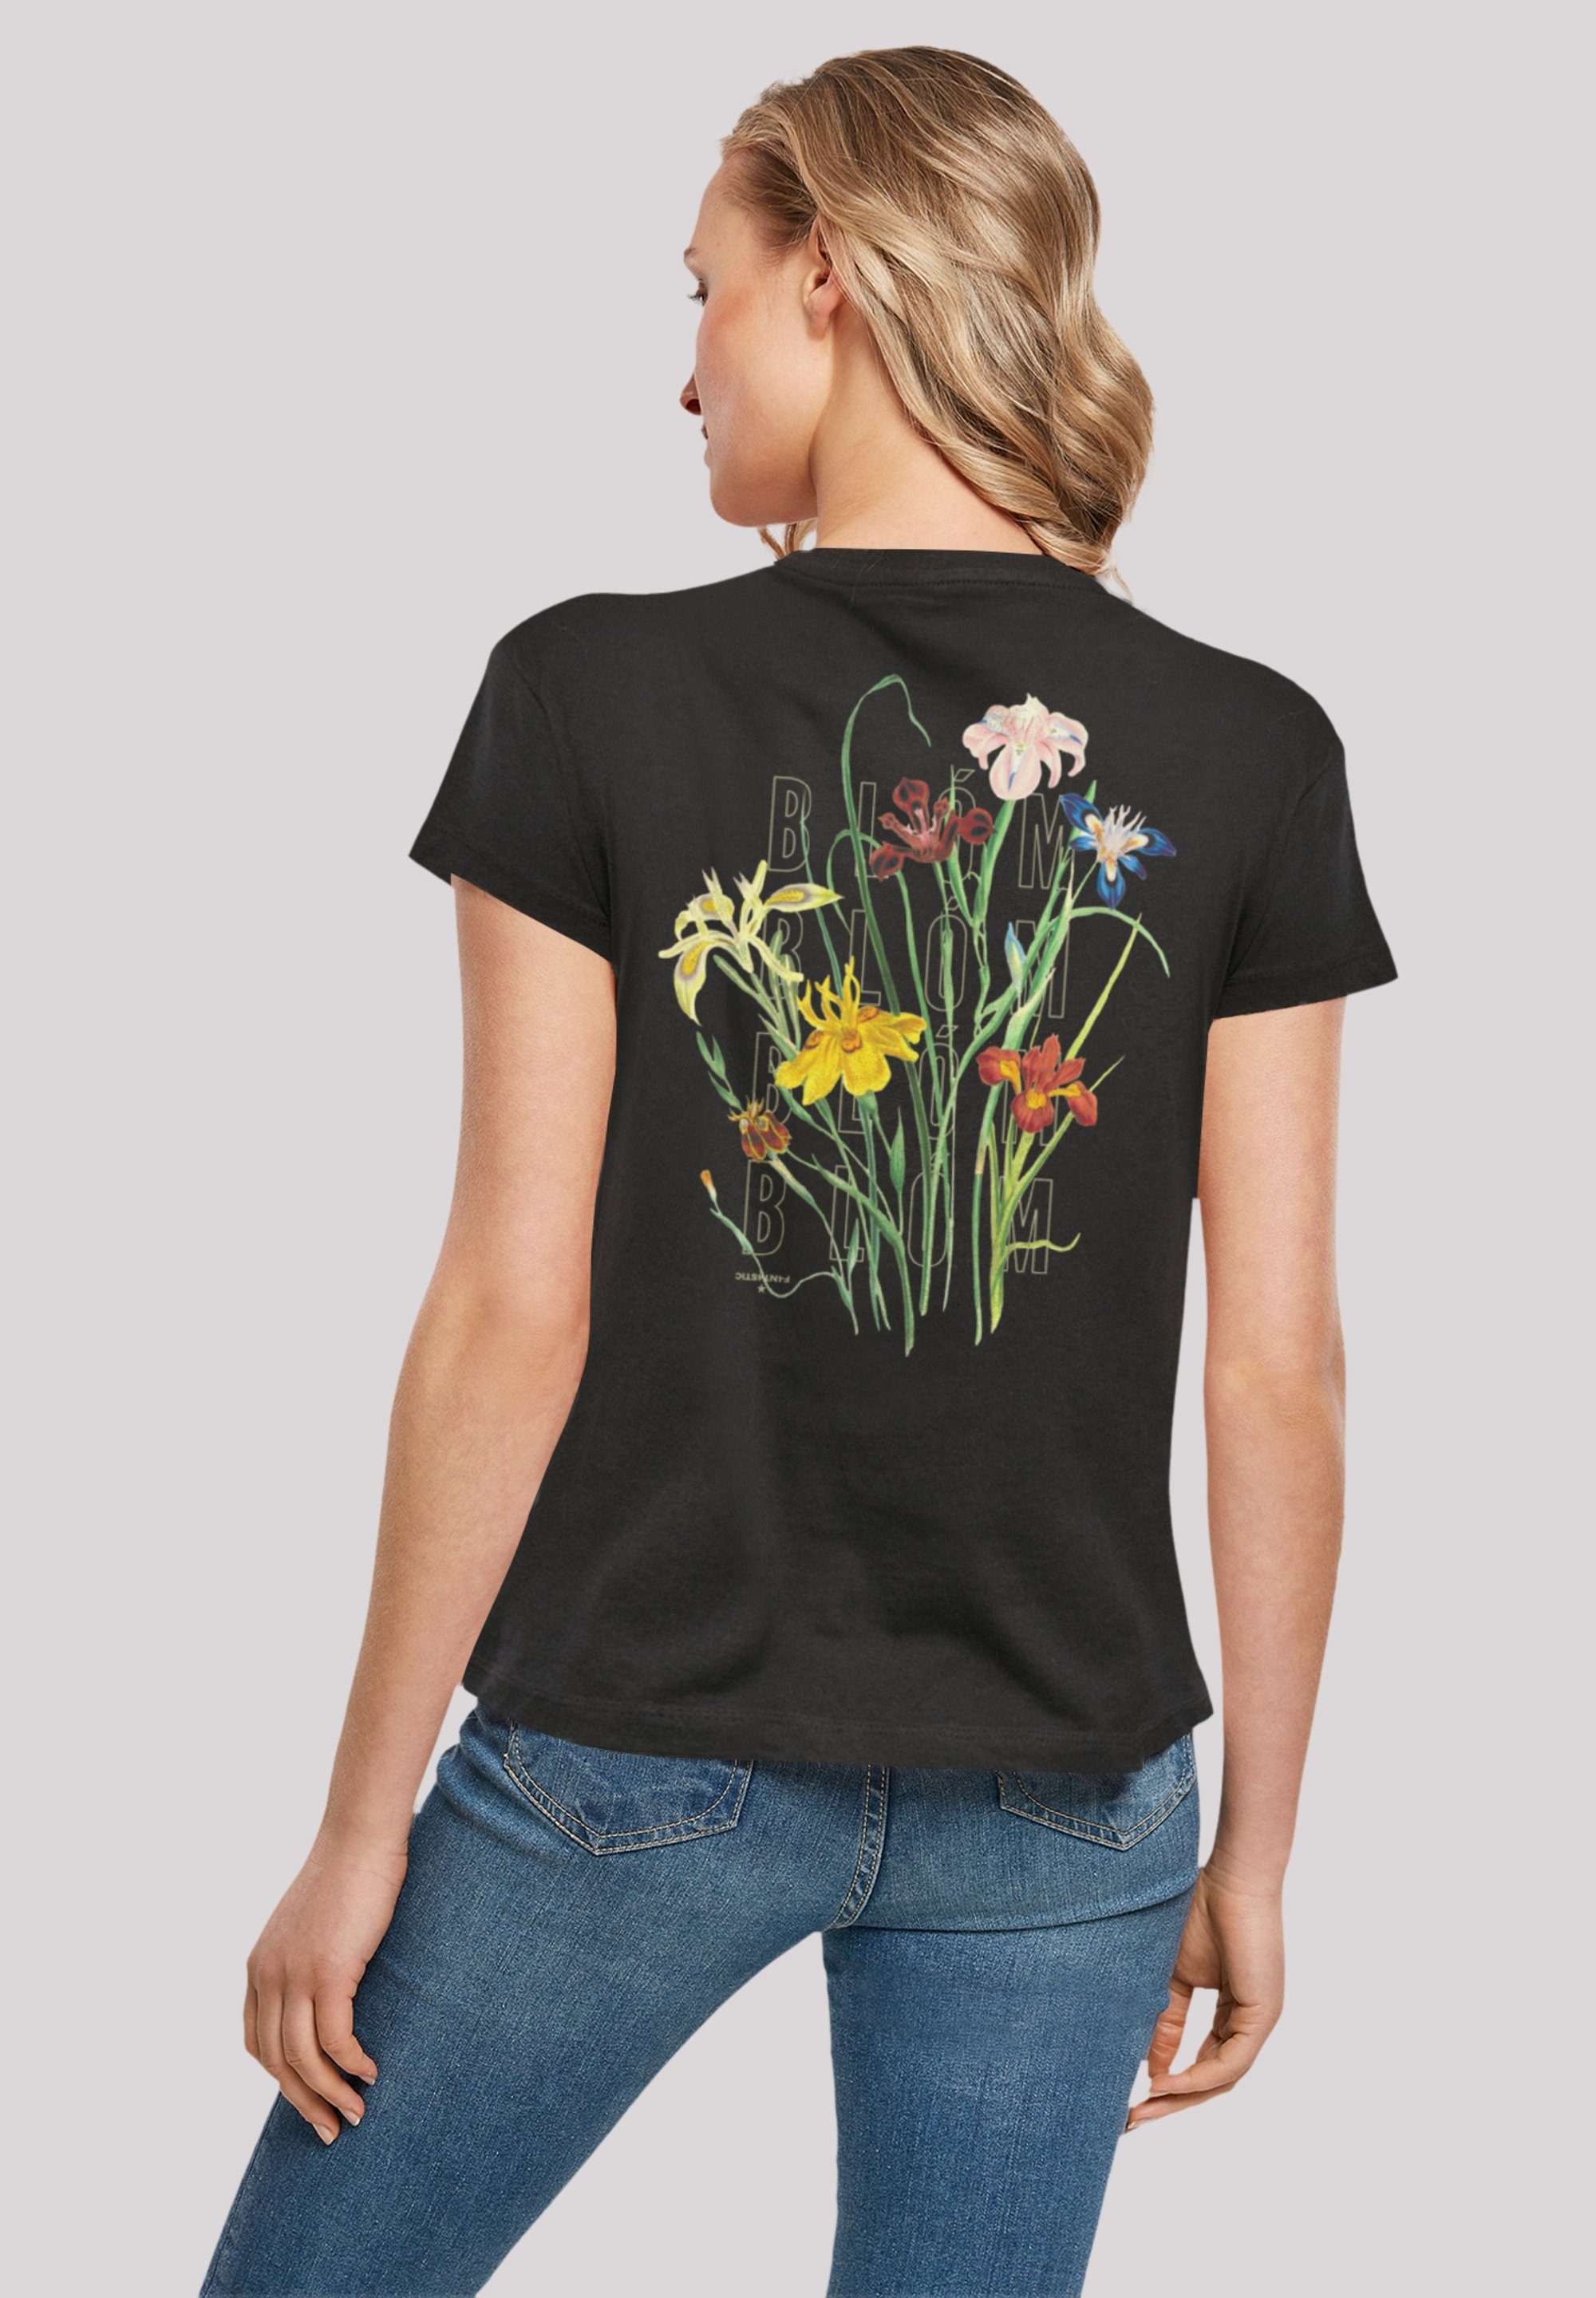 F4NT4STIC T-Shirt Blóm Blumenstrauss Print, Größe weit eine Fällt bitte aus, bestellen kleiner